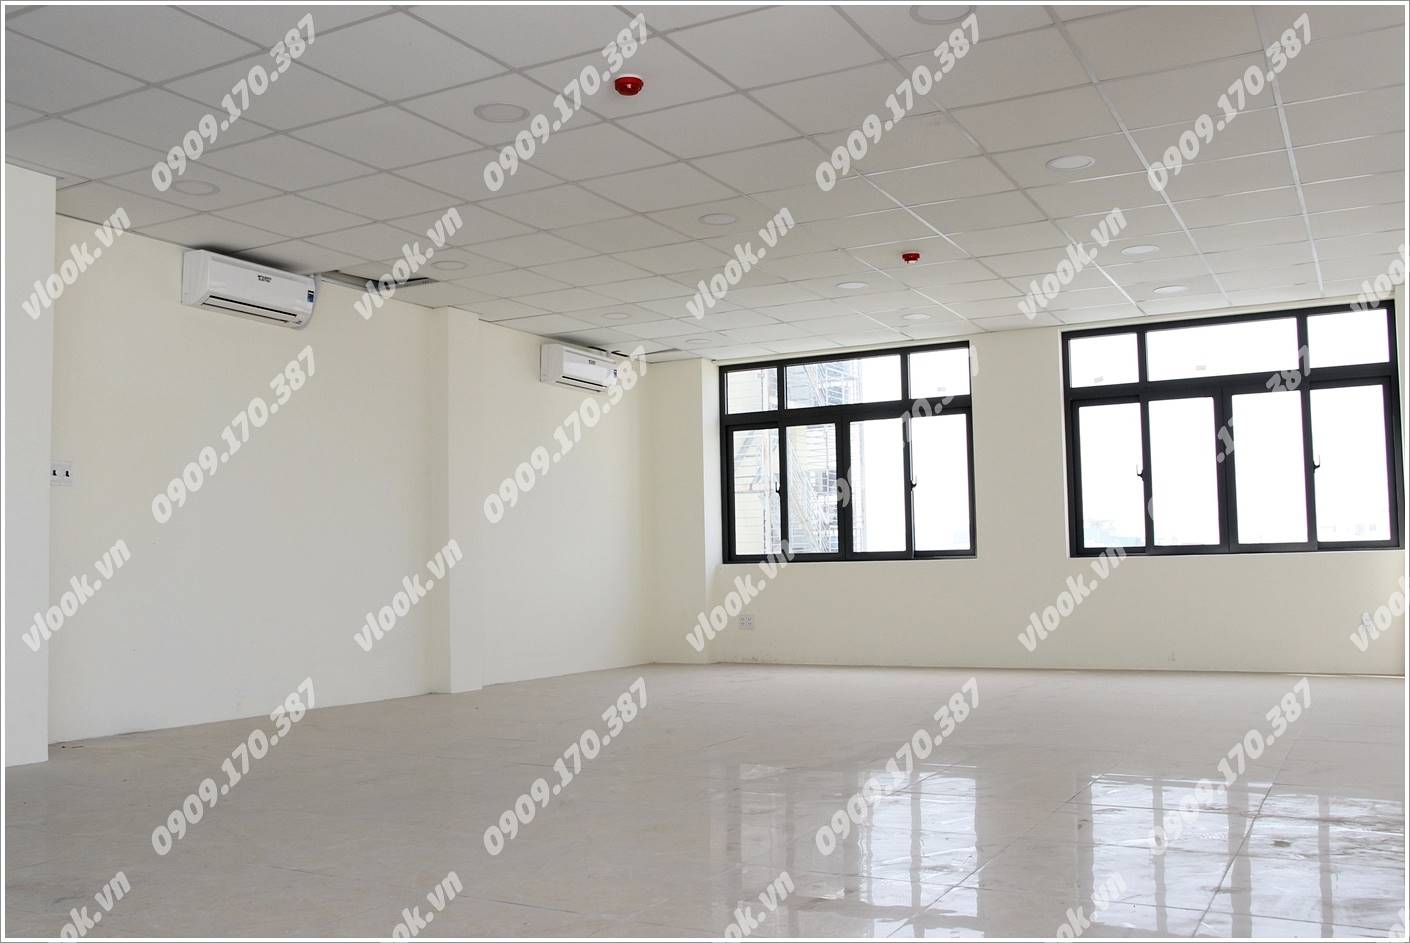 Cao ốc văn phòng cho thuê M.G Phạm Văn Bạch Building, Quận Tân Bình, TP.HCM - vlook.vn